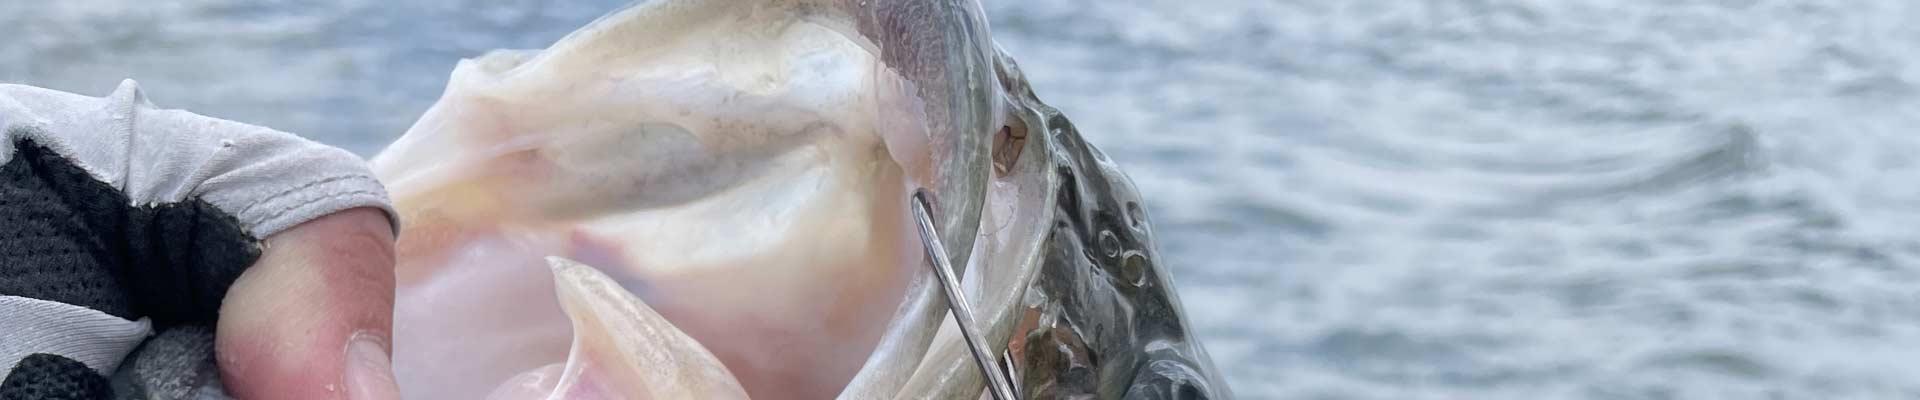 The Largemouth Bass Fishing Slump Buster – The Minimalist Fisherman